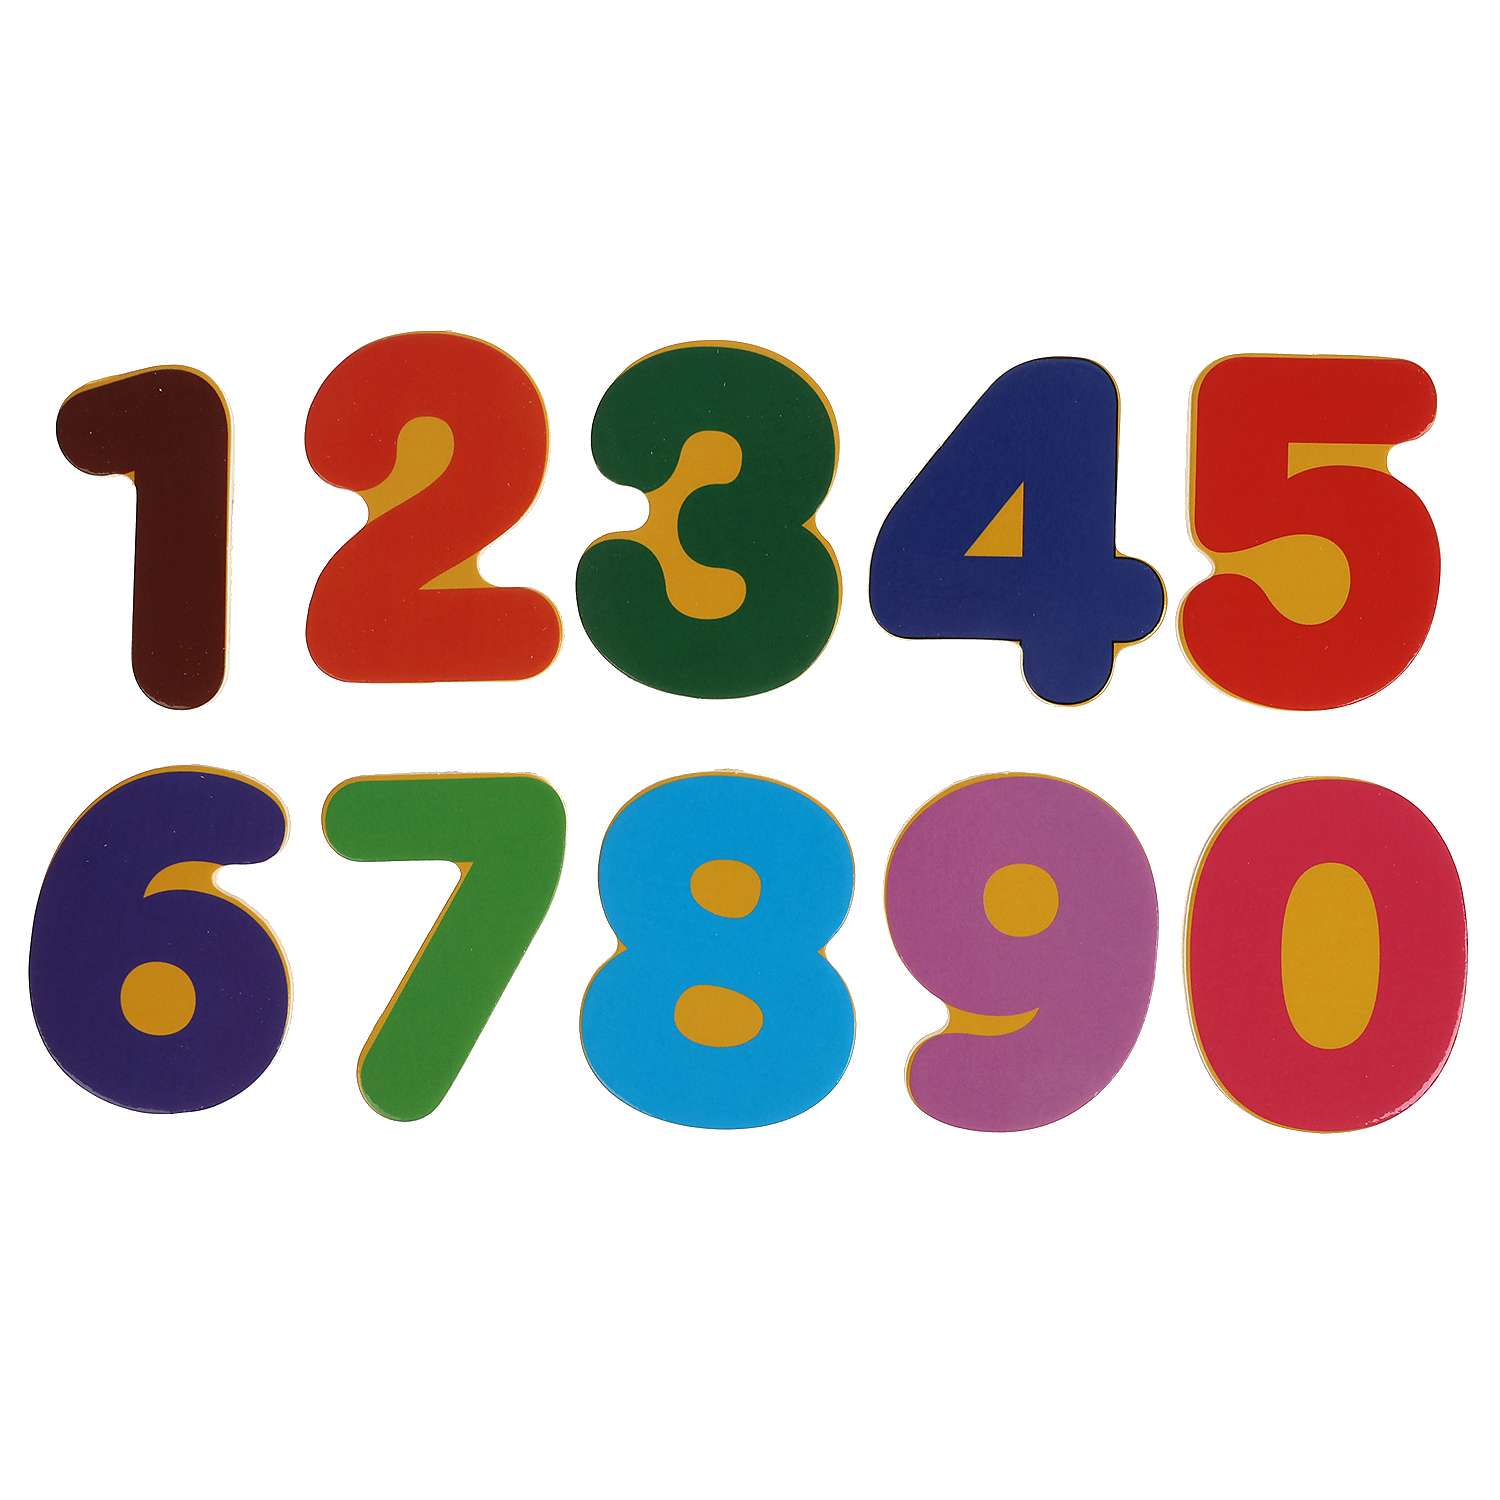 Игрушка деревянная Буратино Три Кота вкладыш цифры - фото 3